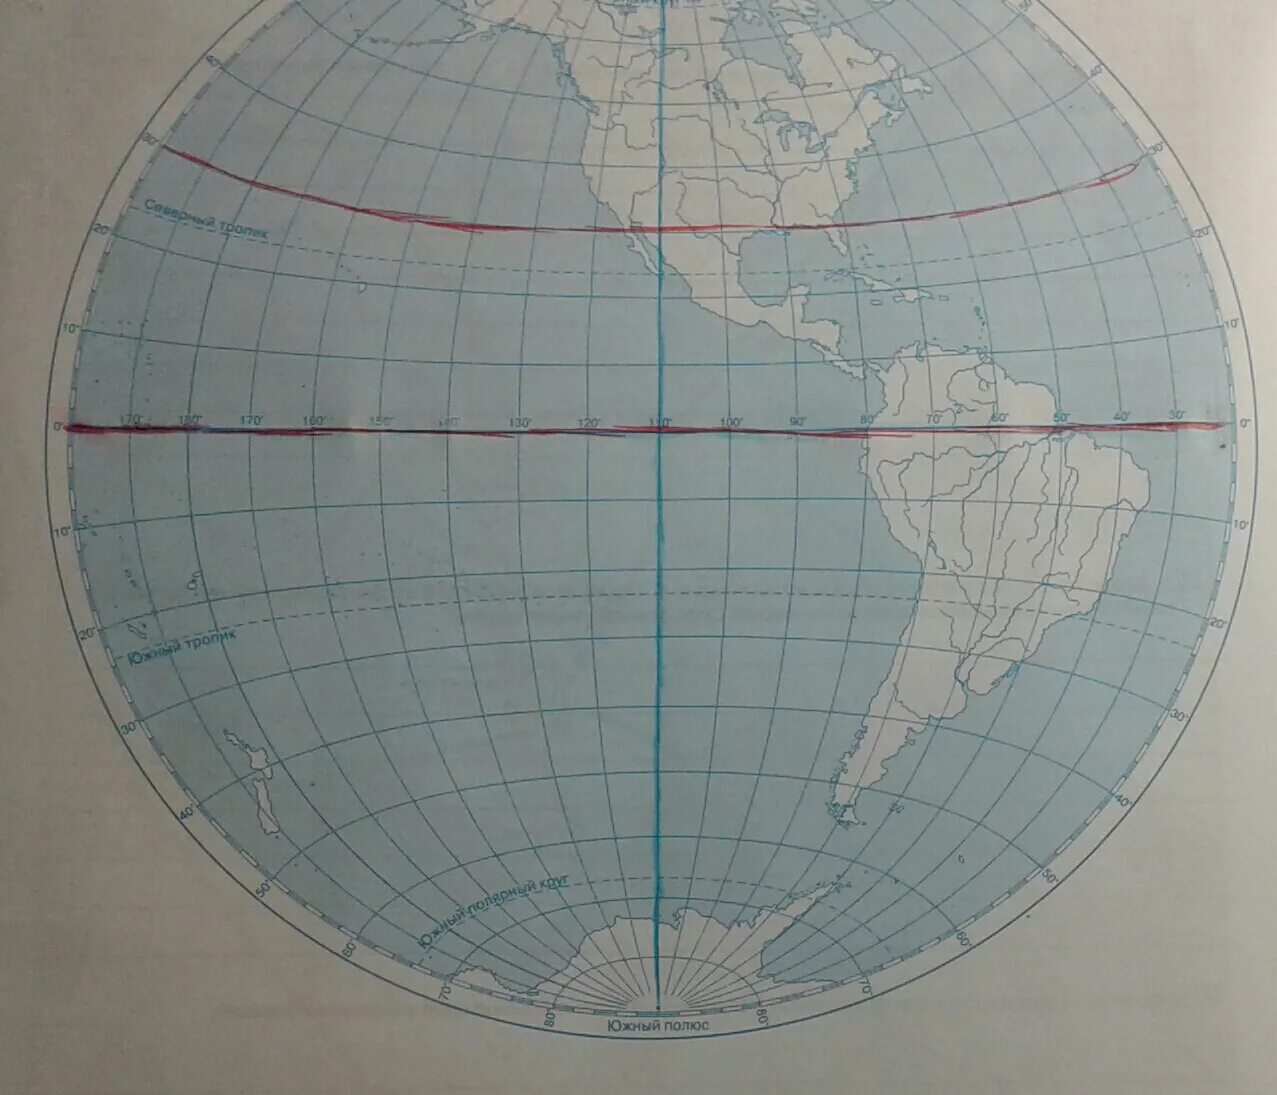 Меридиан 180 материки и океаны. Штриховой материк. Материки которые пересекаются экватором. Экватор пересекает материки. Материки которые пересекают Экватор.